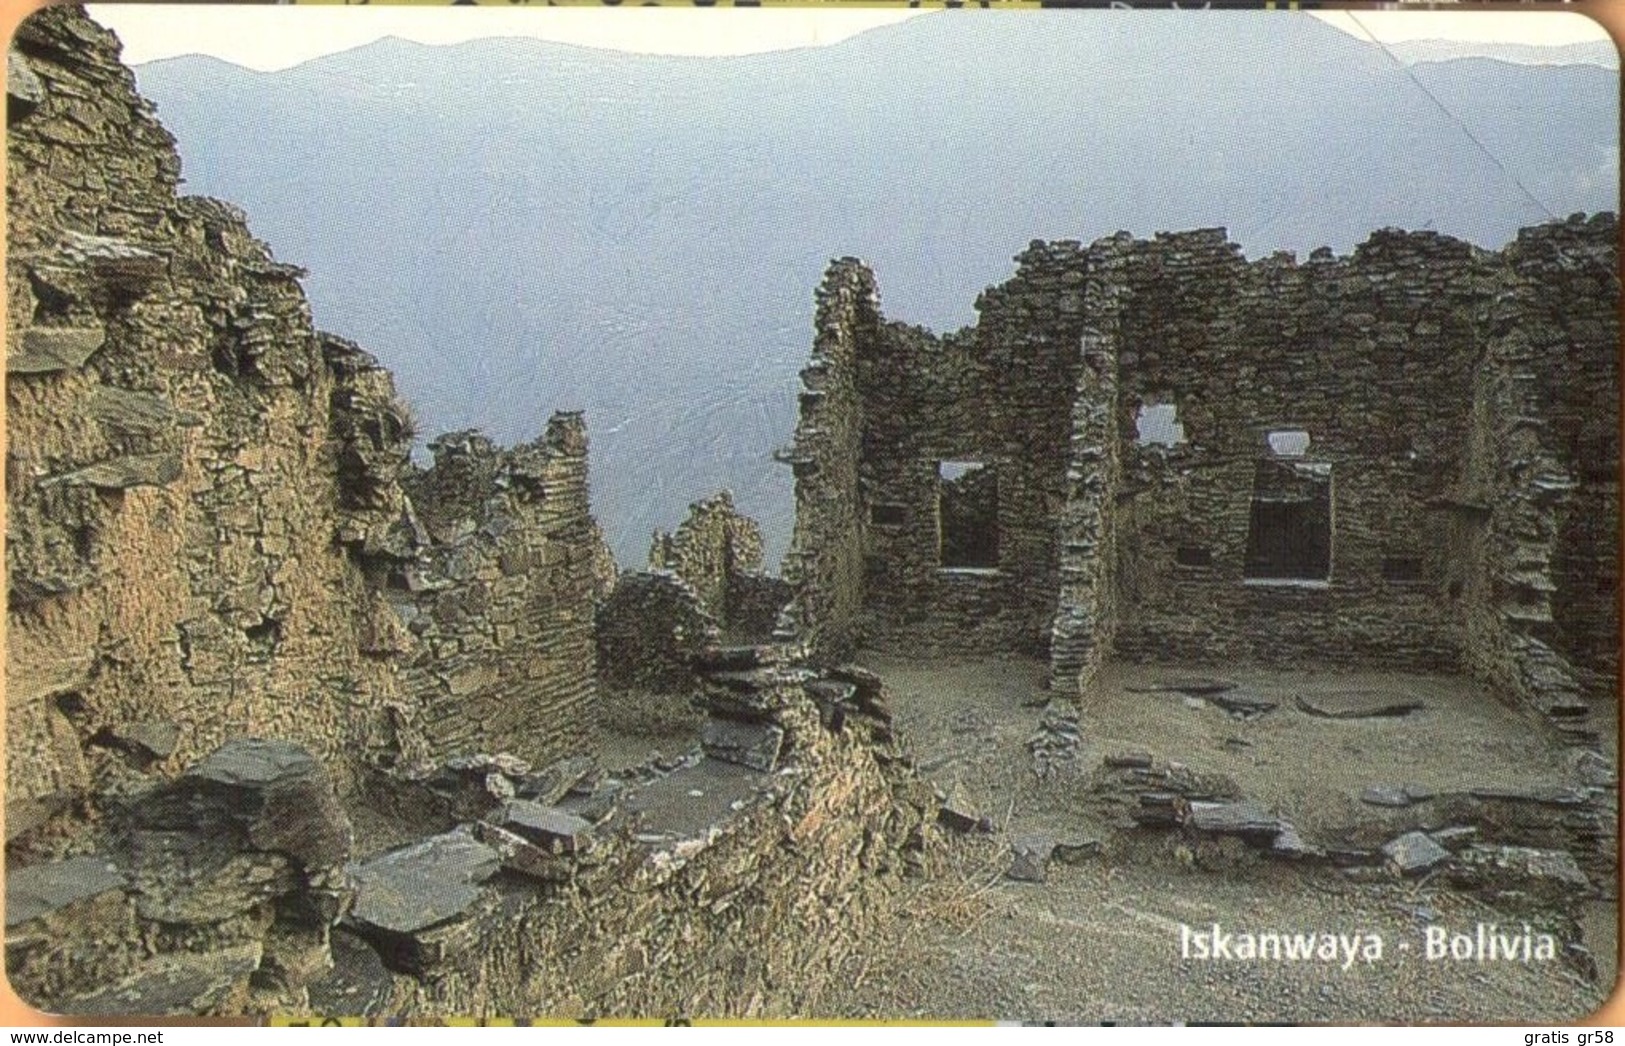 Bolivia - BO-ENTEL-033, Urmet, Iskanwaya,  Ruins Of Ancient Towns, 10 Bs., 8/98, Mint - Bolivia